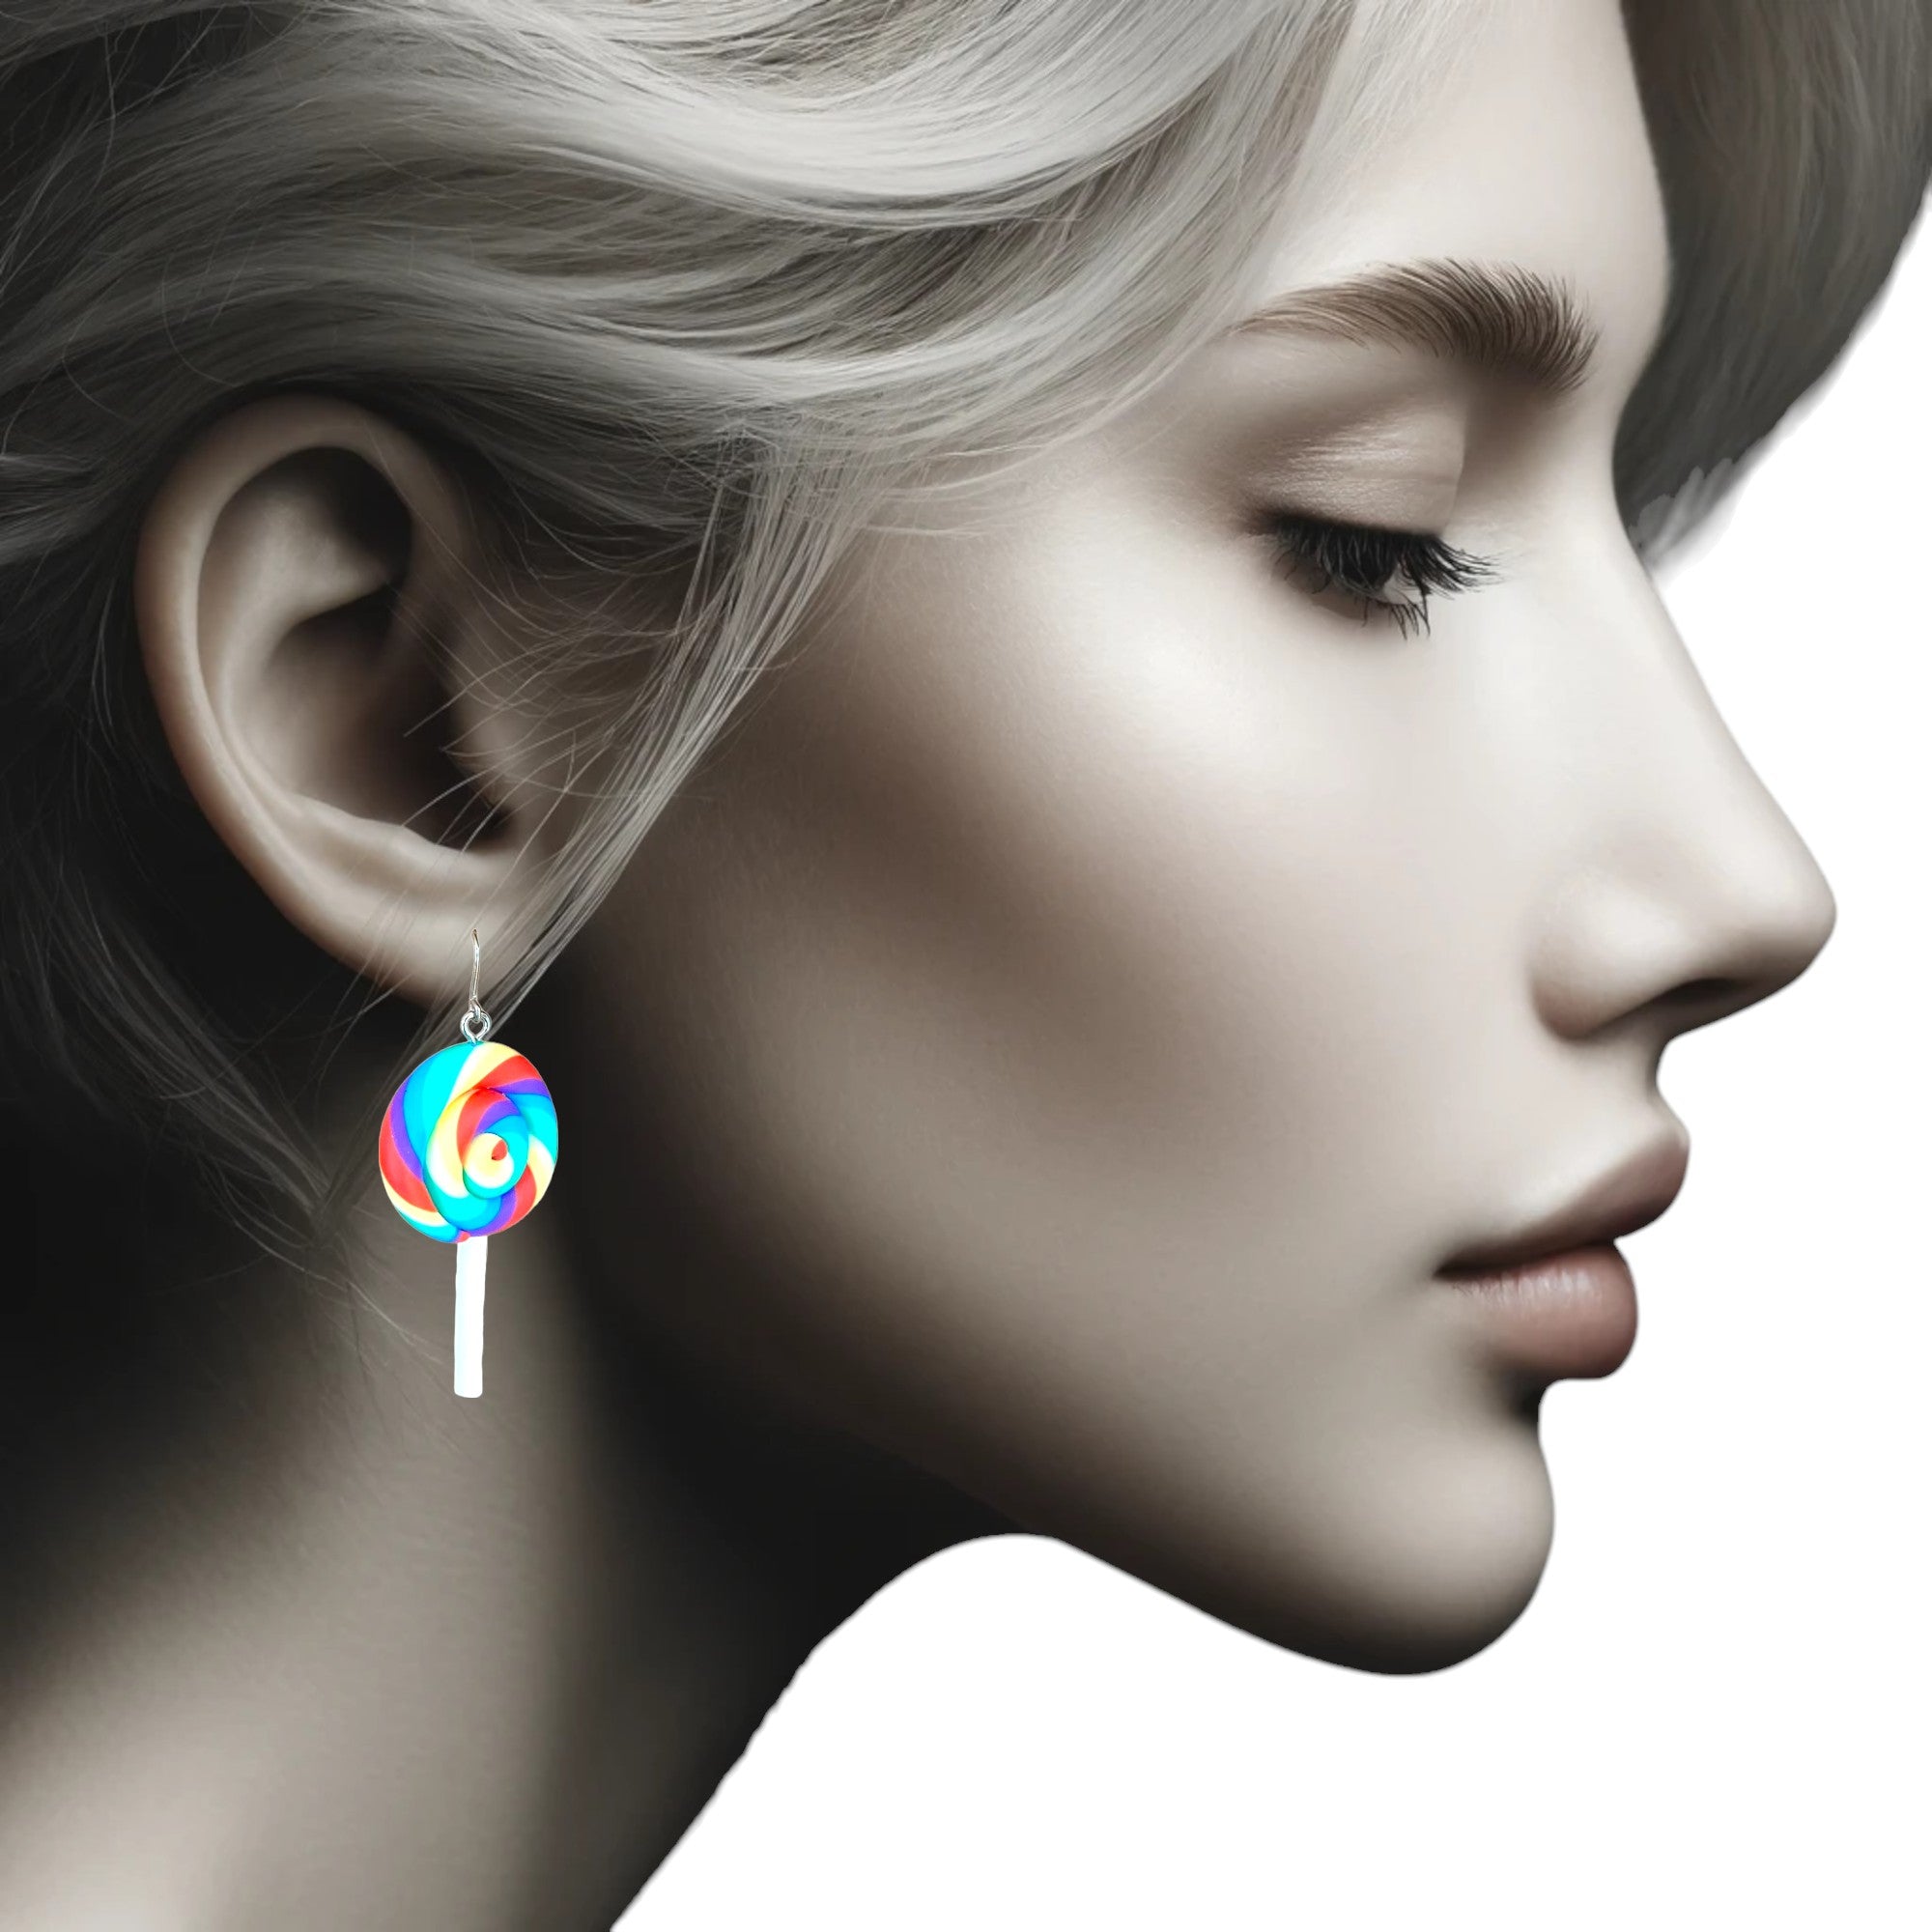 Lollypop earrings